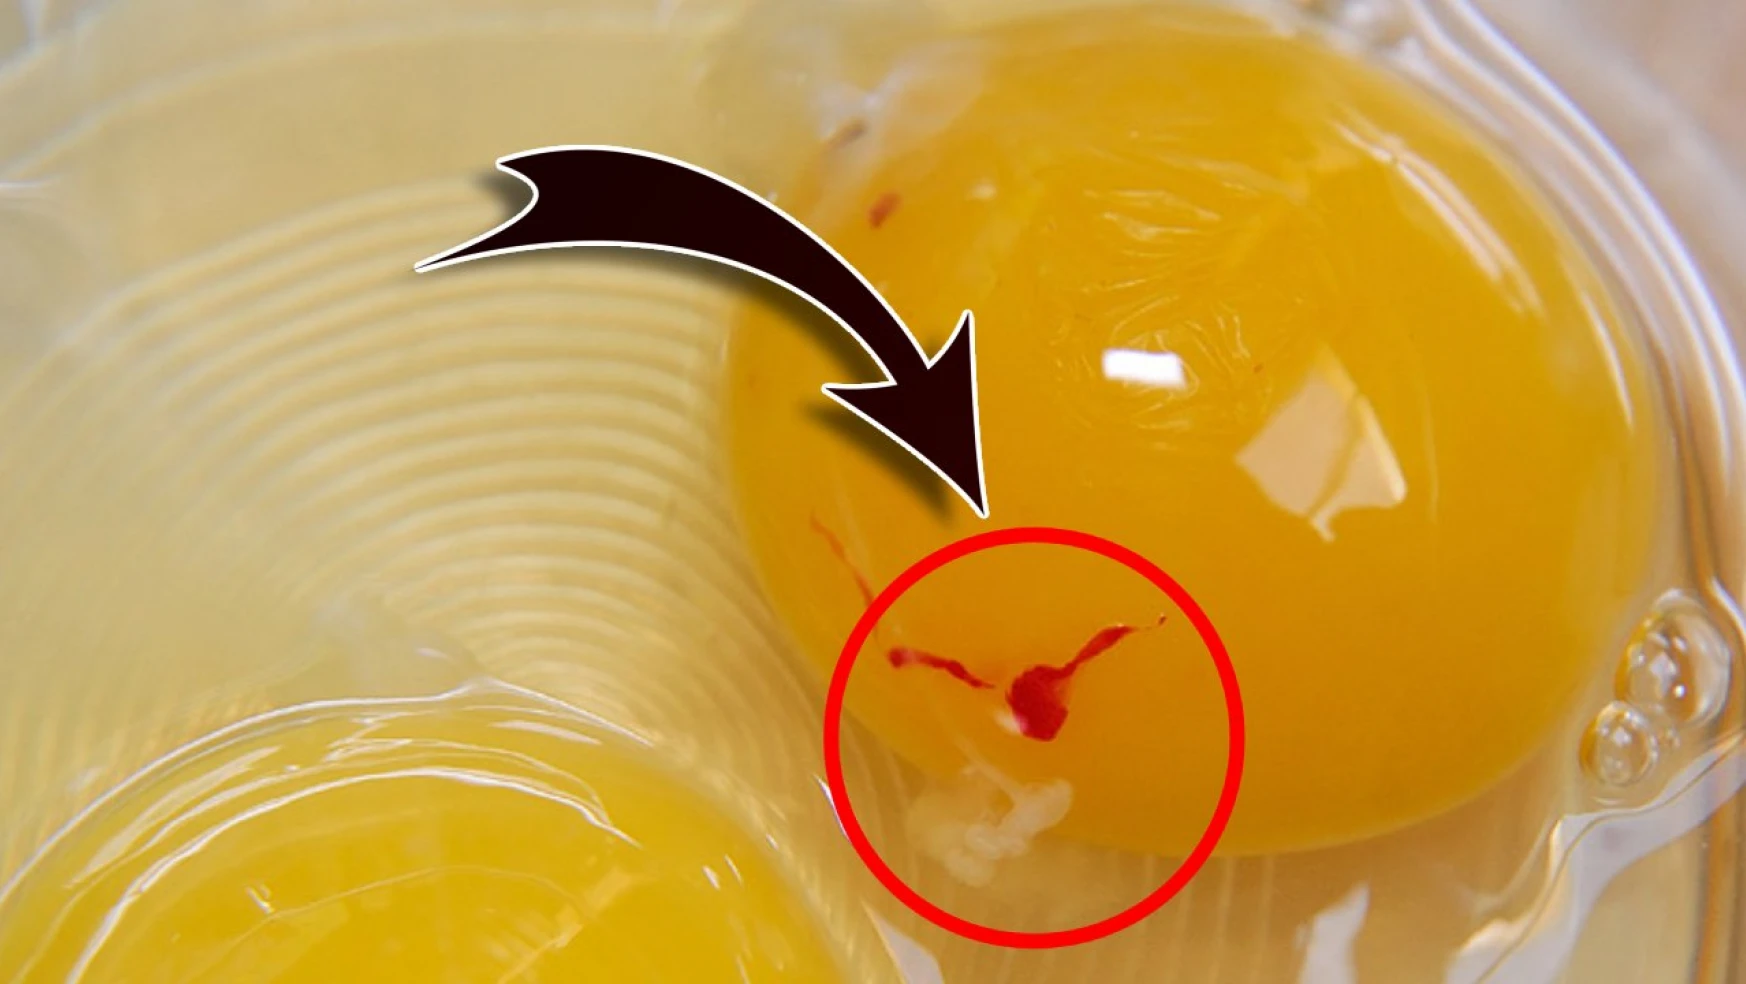 Kırmızı lekeli yumurta yenir mi? Uzmanlar açıkladı! Bugüne kadar tersini yapmış olabilirsiniz